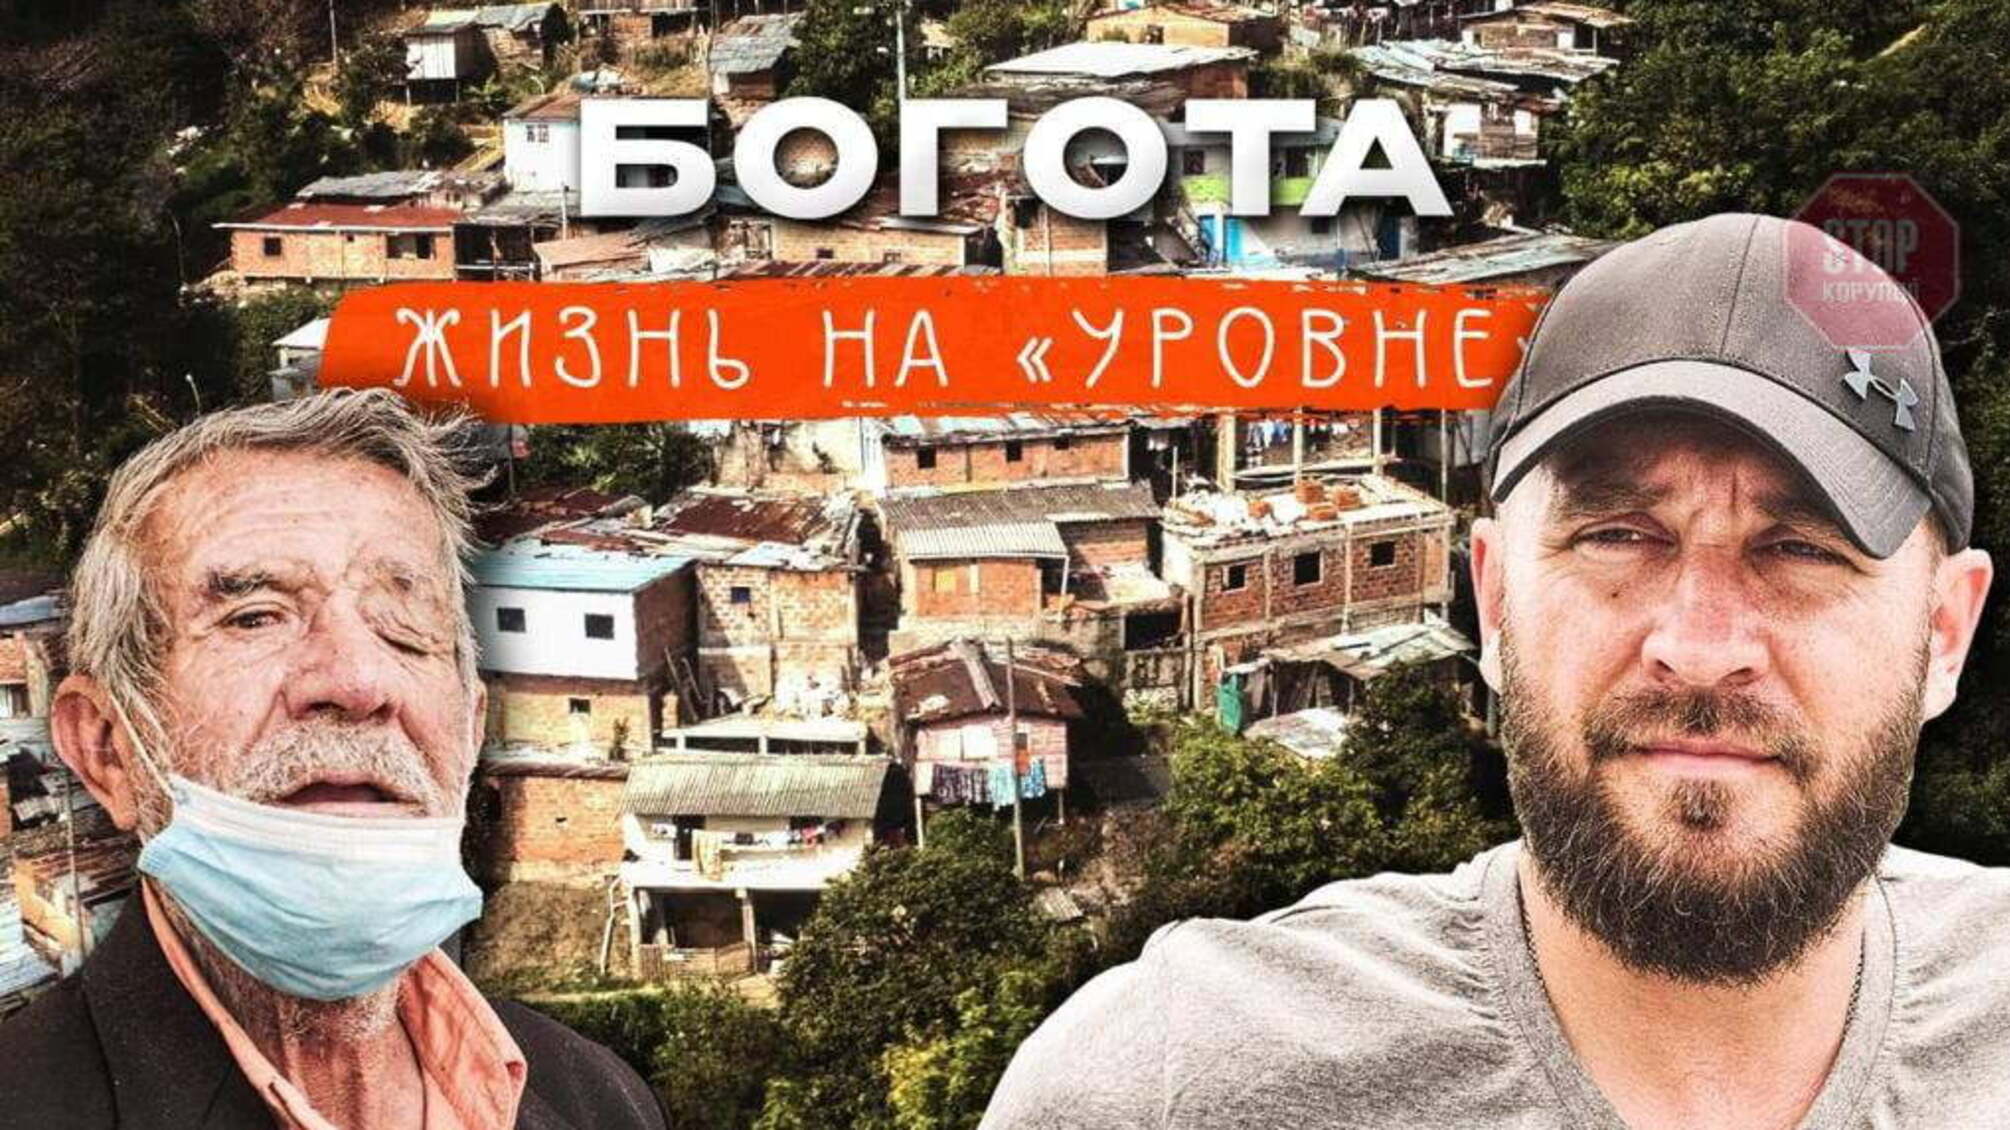 «Из какого ты района?» Украинский журналист показал шокирующее социальное неравенство столицы Колумбии (видео)